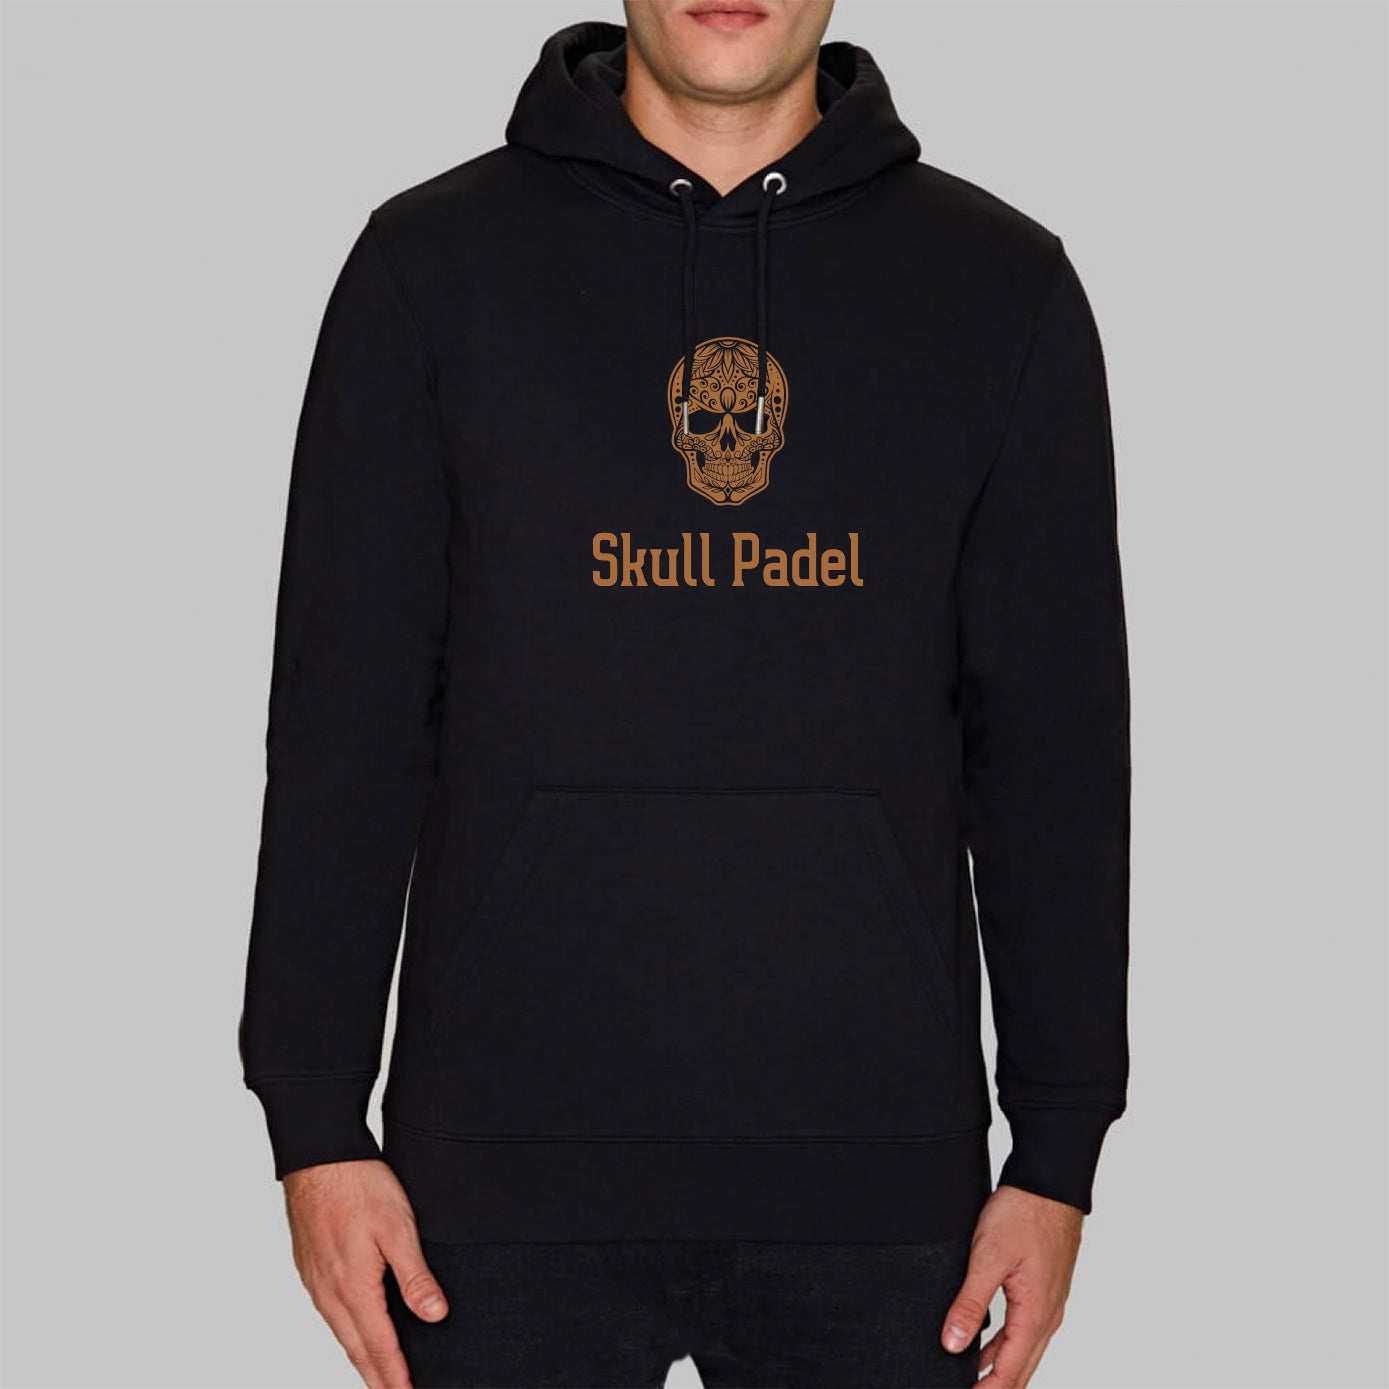 SKULL PADEL HOODIE - BLACK & GOLD